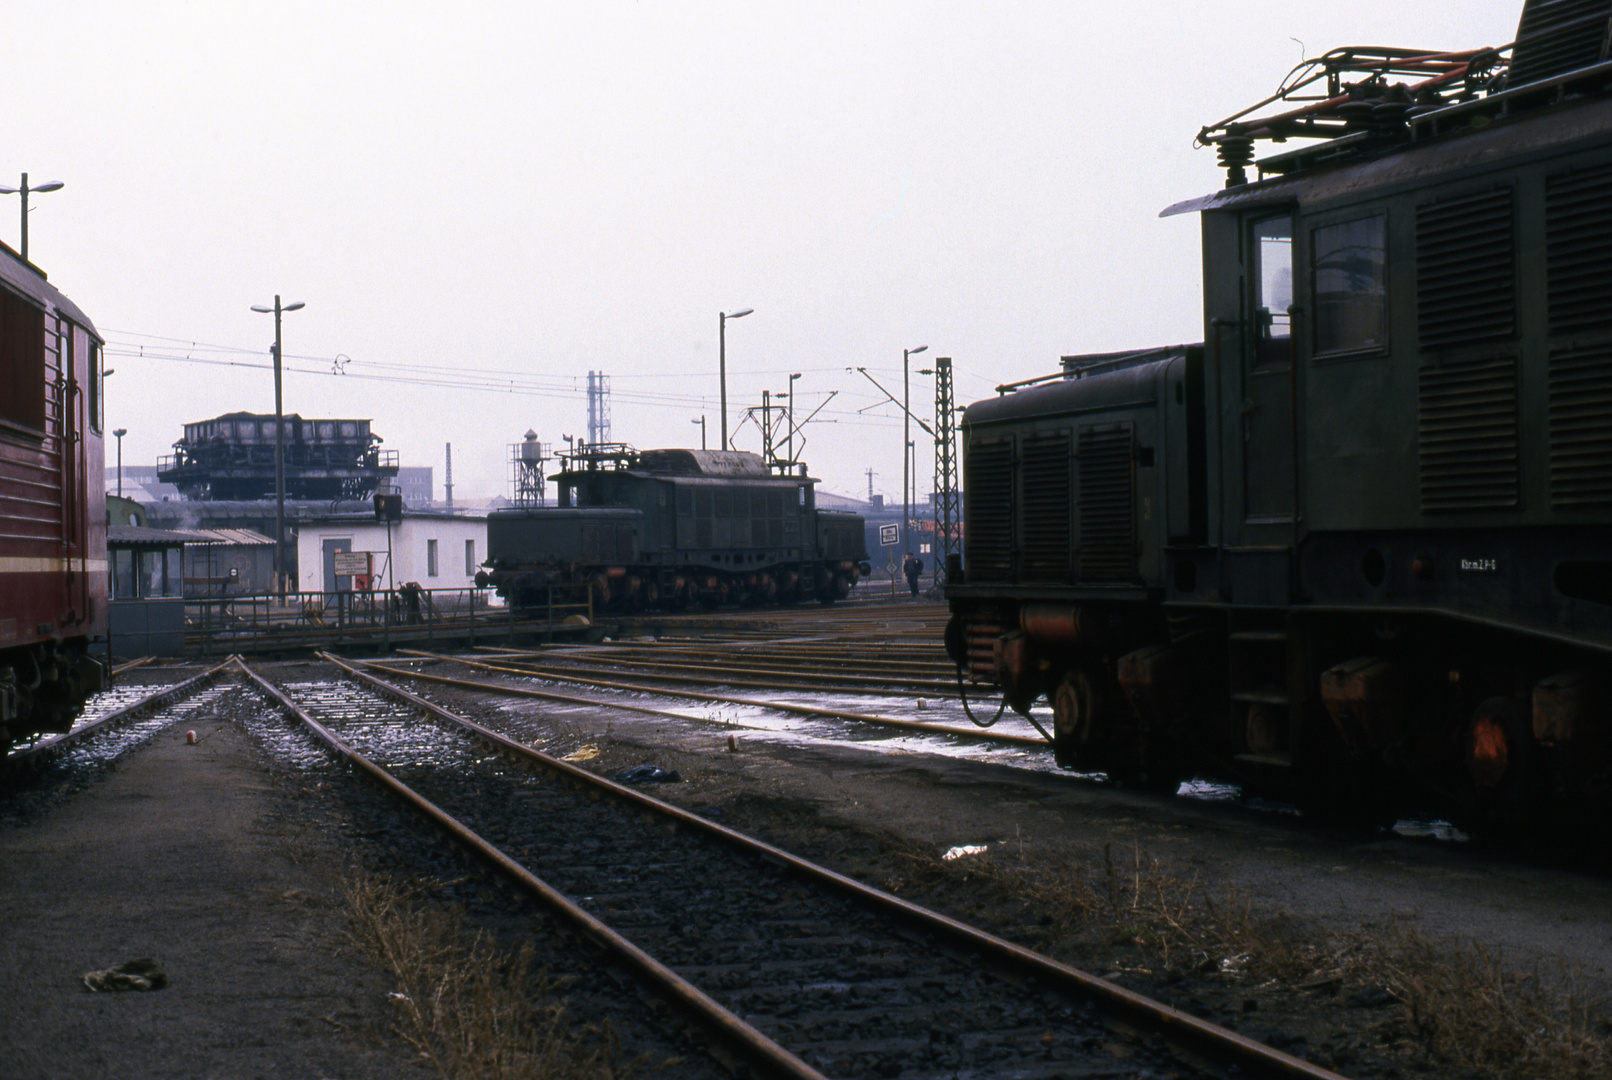 Damals in Engelsdorf (28.12.1989)